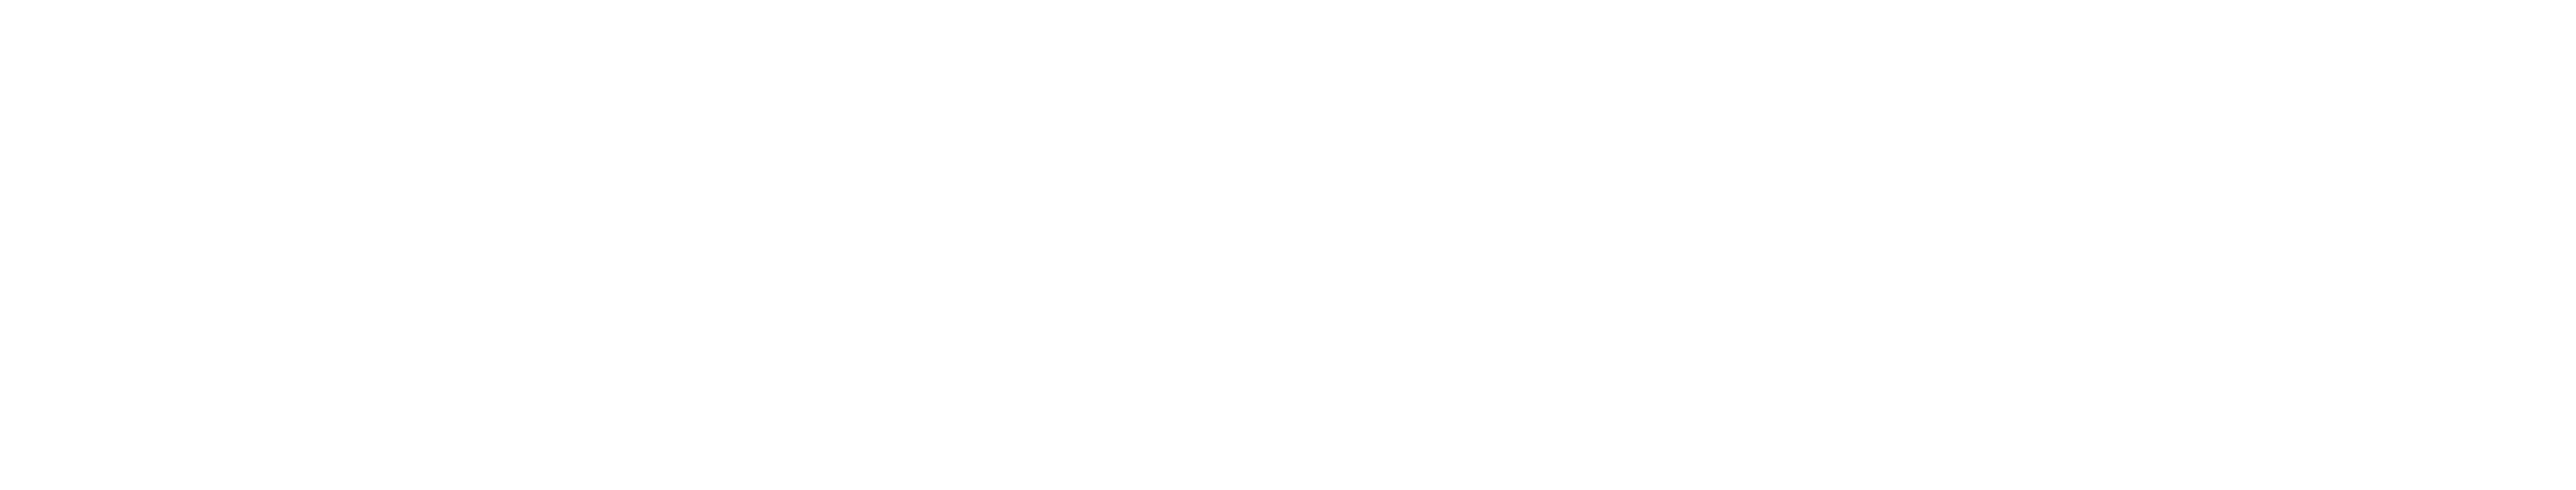 Digital Daily News – Australia's Digital News Agency